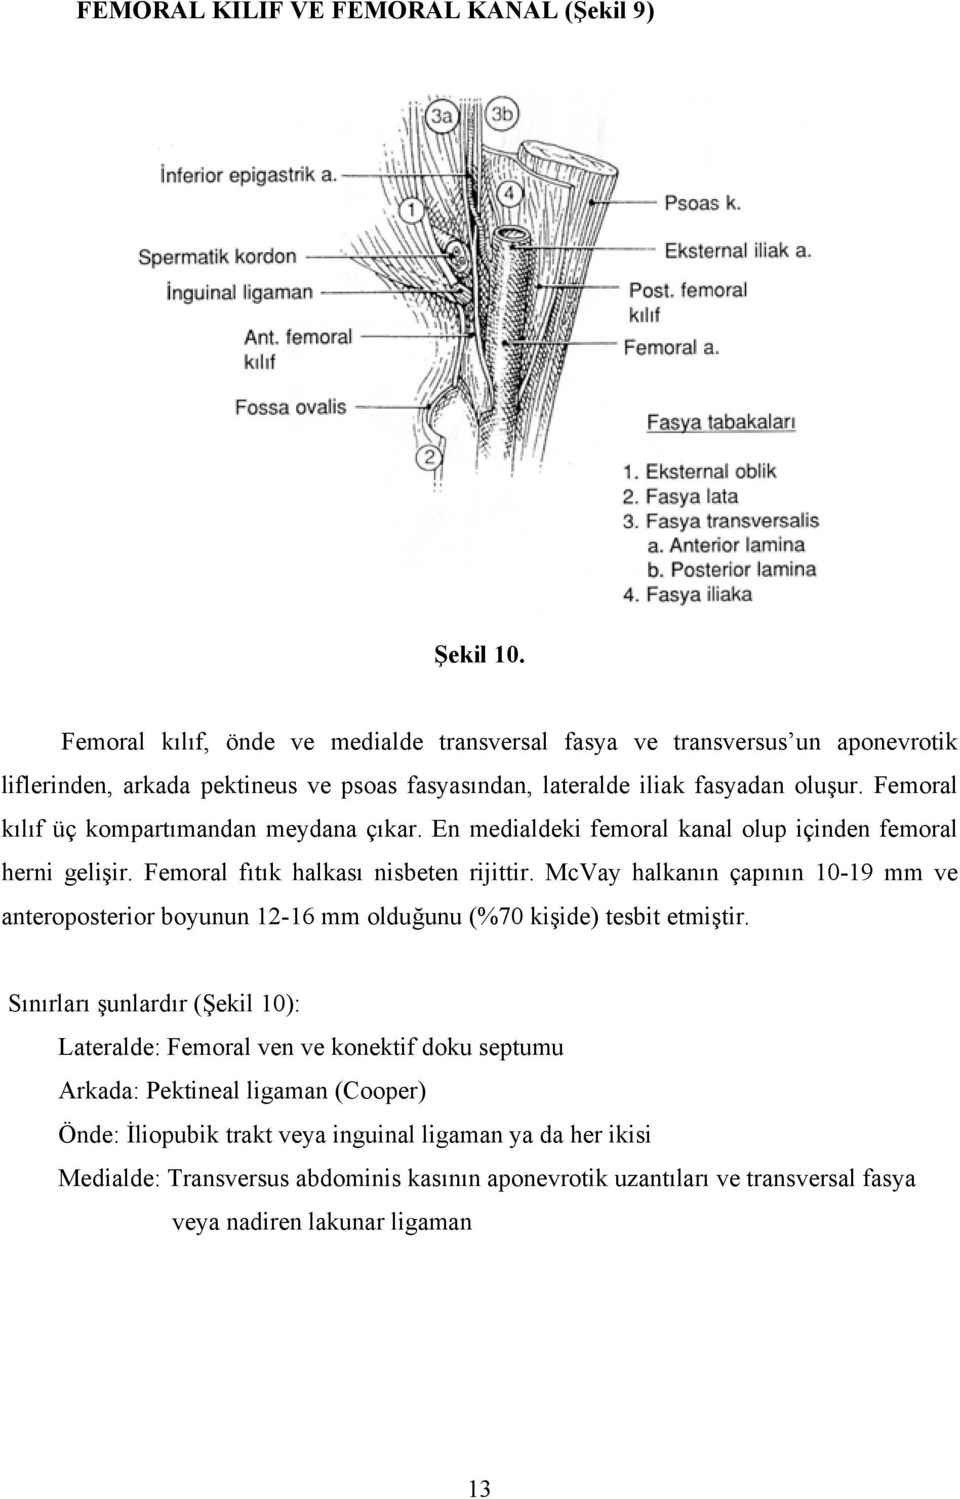 Femoral kılıf üç kompartımandan meydana çıkar. En medialdeki femoral kanal olup içinden femoral herni gelişir. Femoral fıtık halkası nisbeten rijittir.